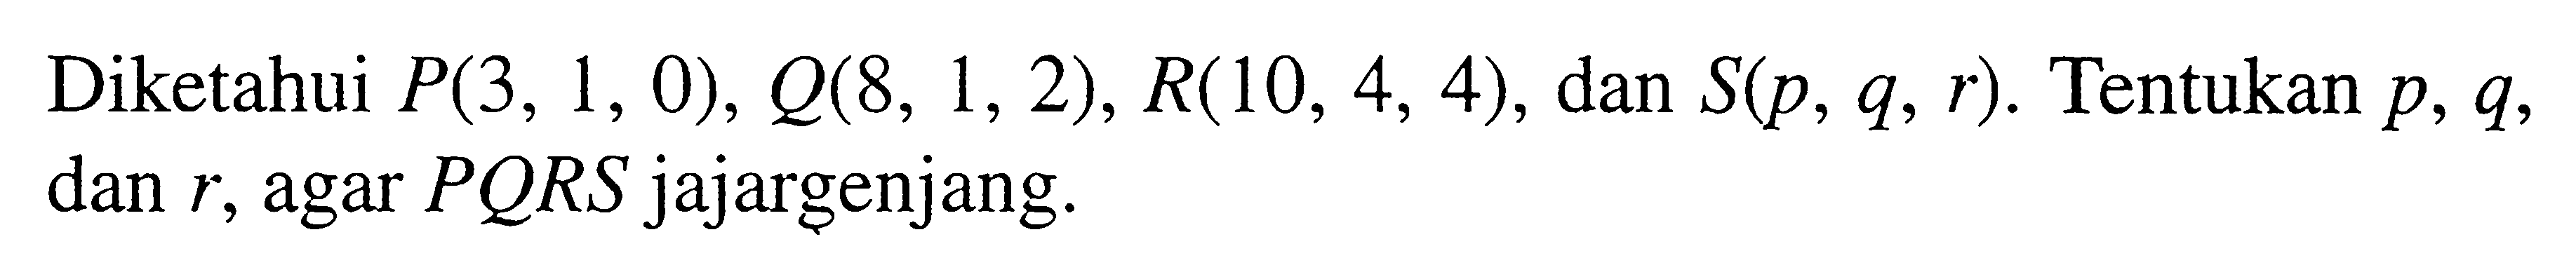 Diketahui P_(3,1,0), Q_(8,1,2), R_(10,4,4), dan S_(p_,q_,r_). Tentukan p_,q_, dan r_, agar P_Q_R_S jajar genjang